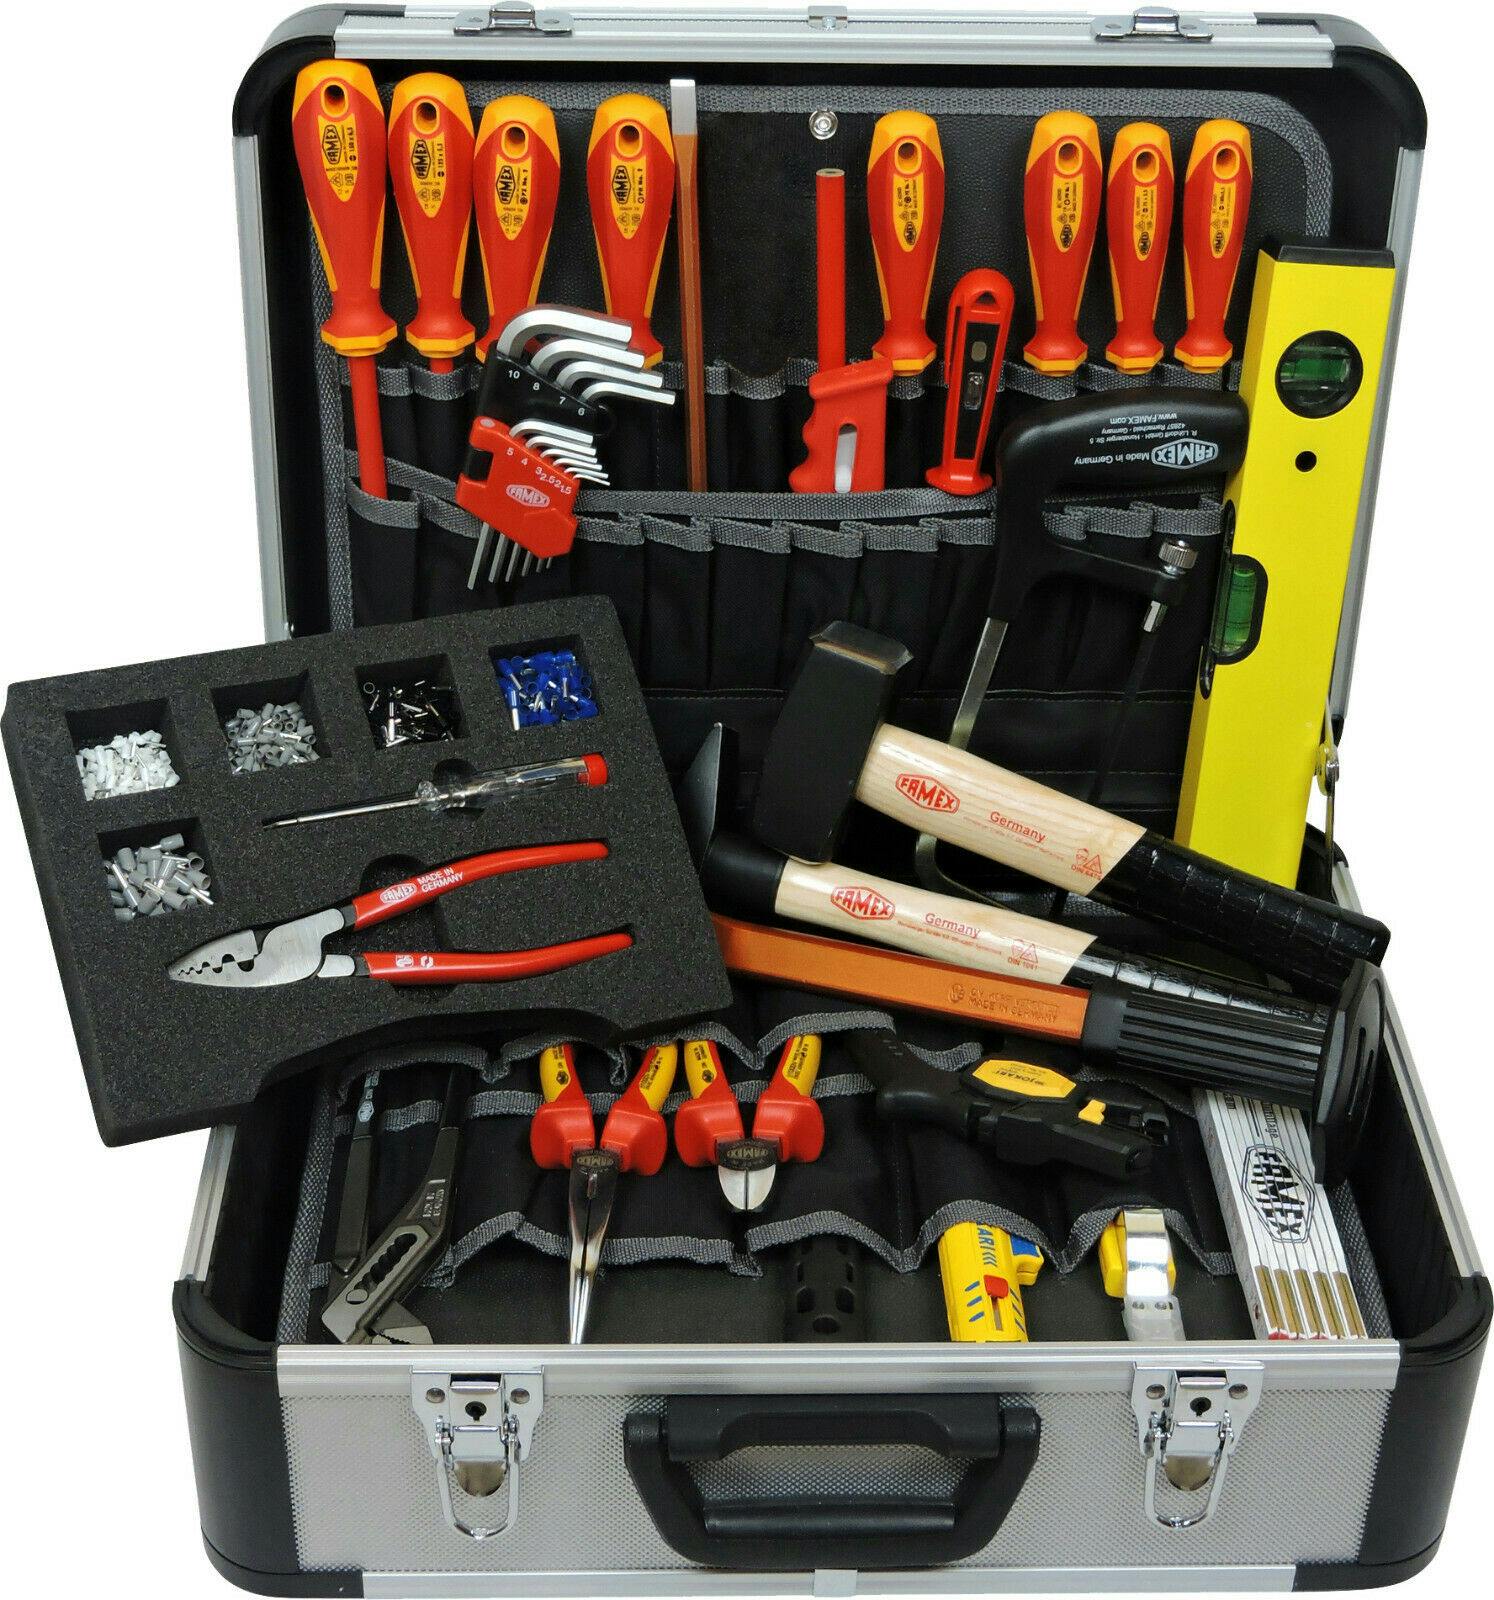 FAMEX 436-10 Elektriker Werkzeugkoffer mit gefüllt Werkzeug - Top Qualität METRO Werkzeugkiste Marktplatz Set - | Profi